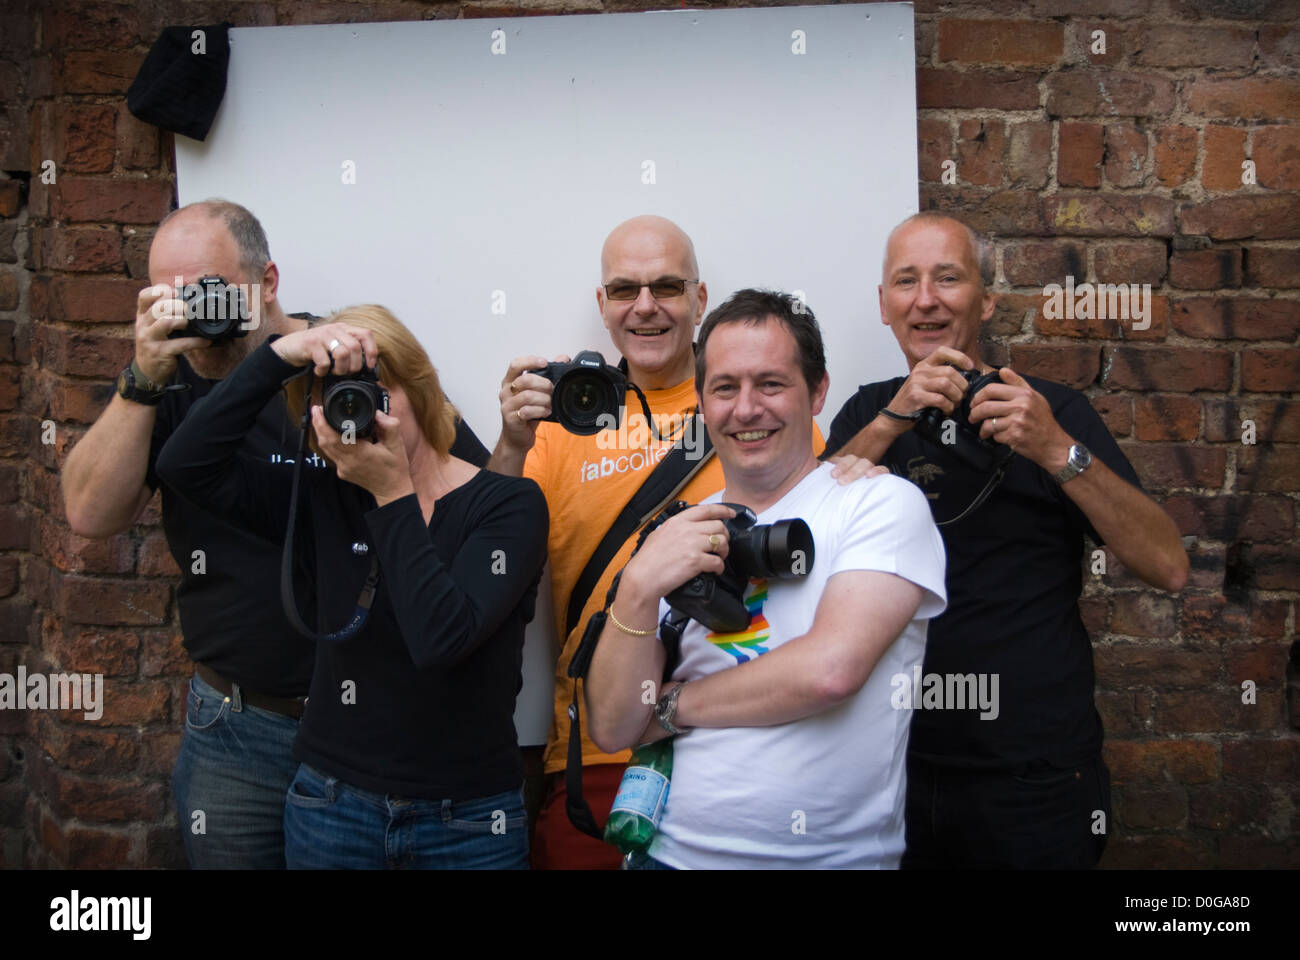 Gruppo di fotografi per hobby in posa con la loro fotocamera in Inghilterra Foto Stock